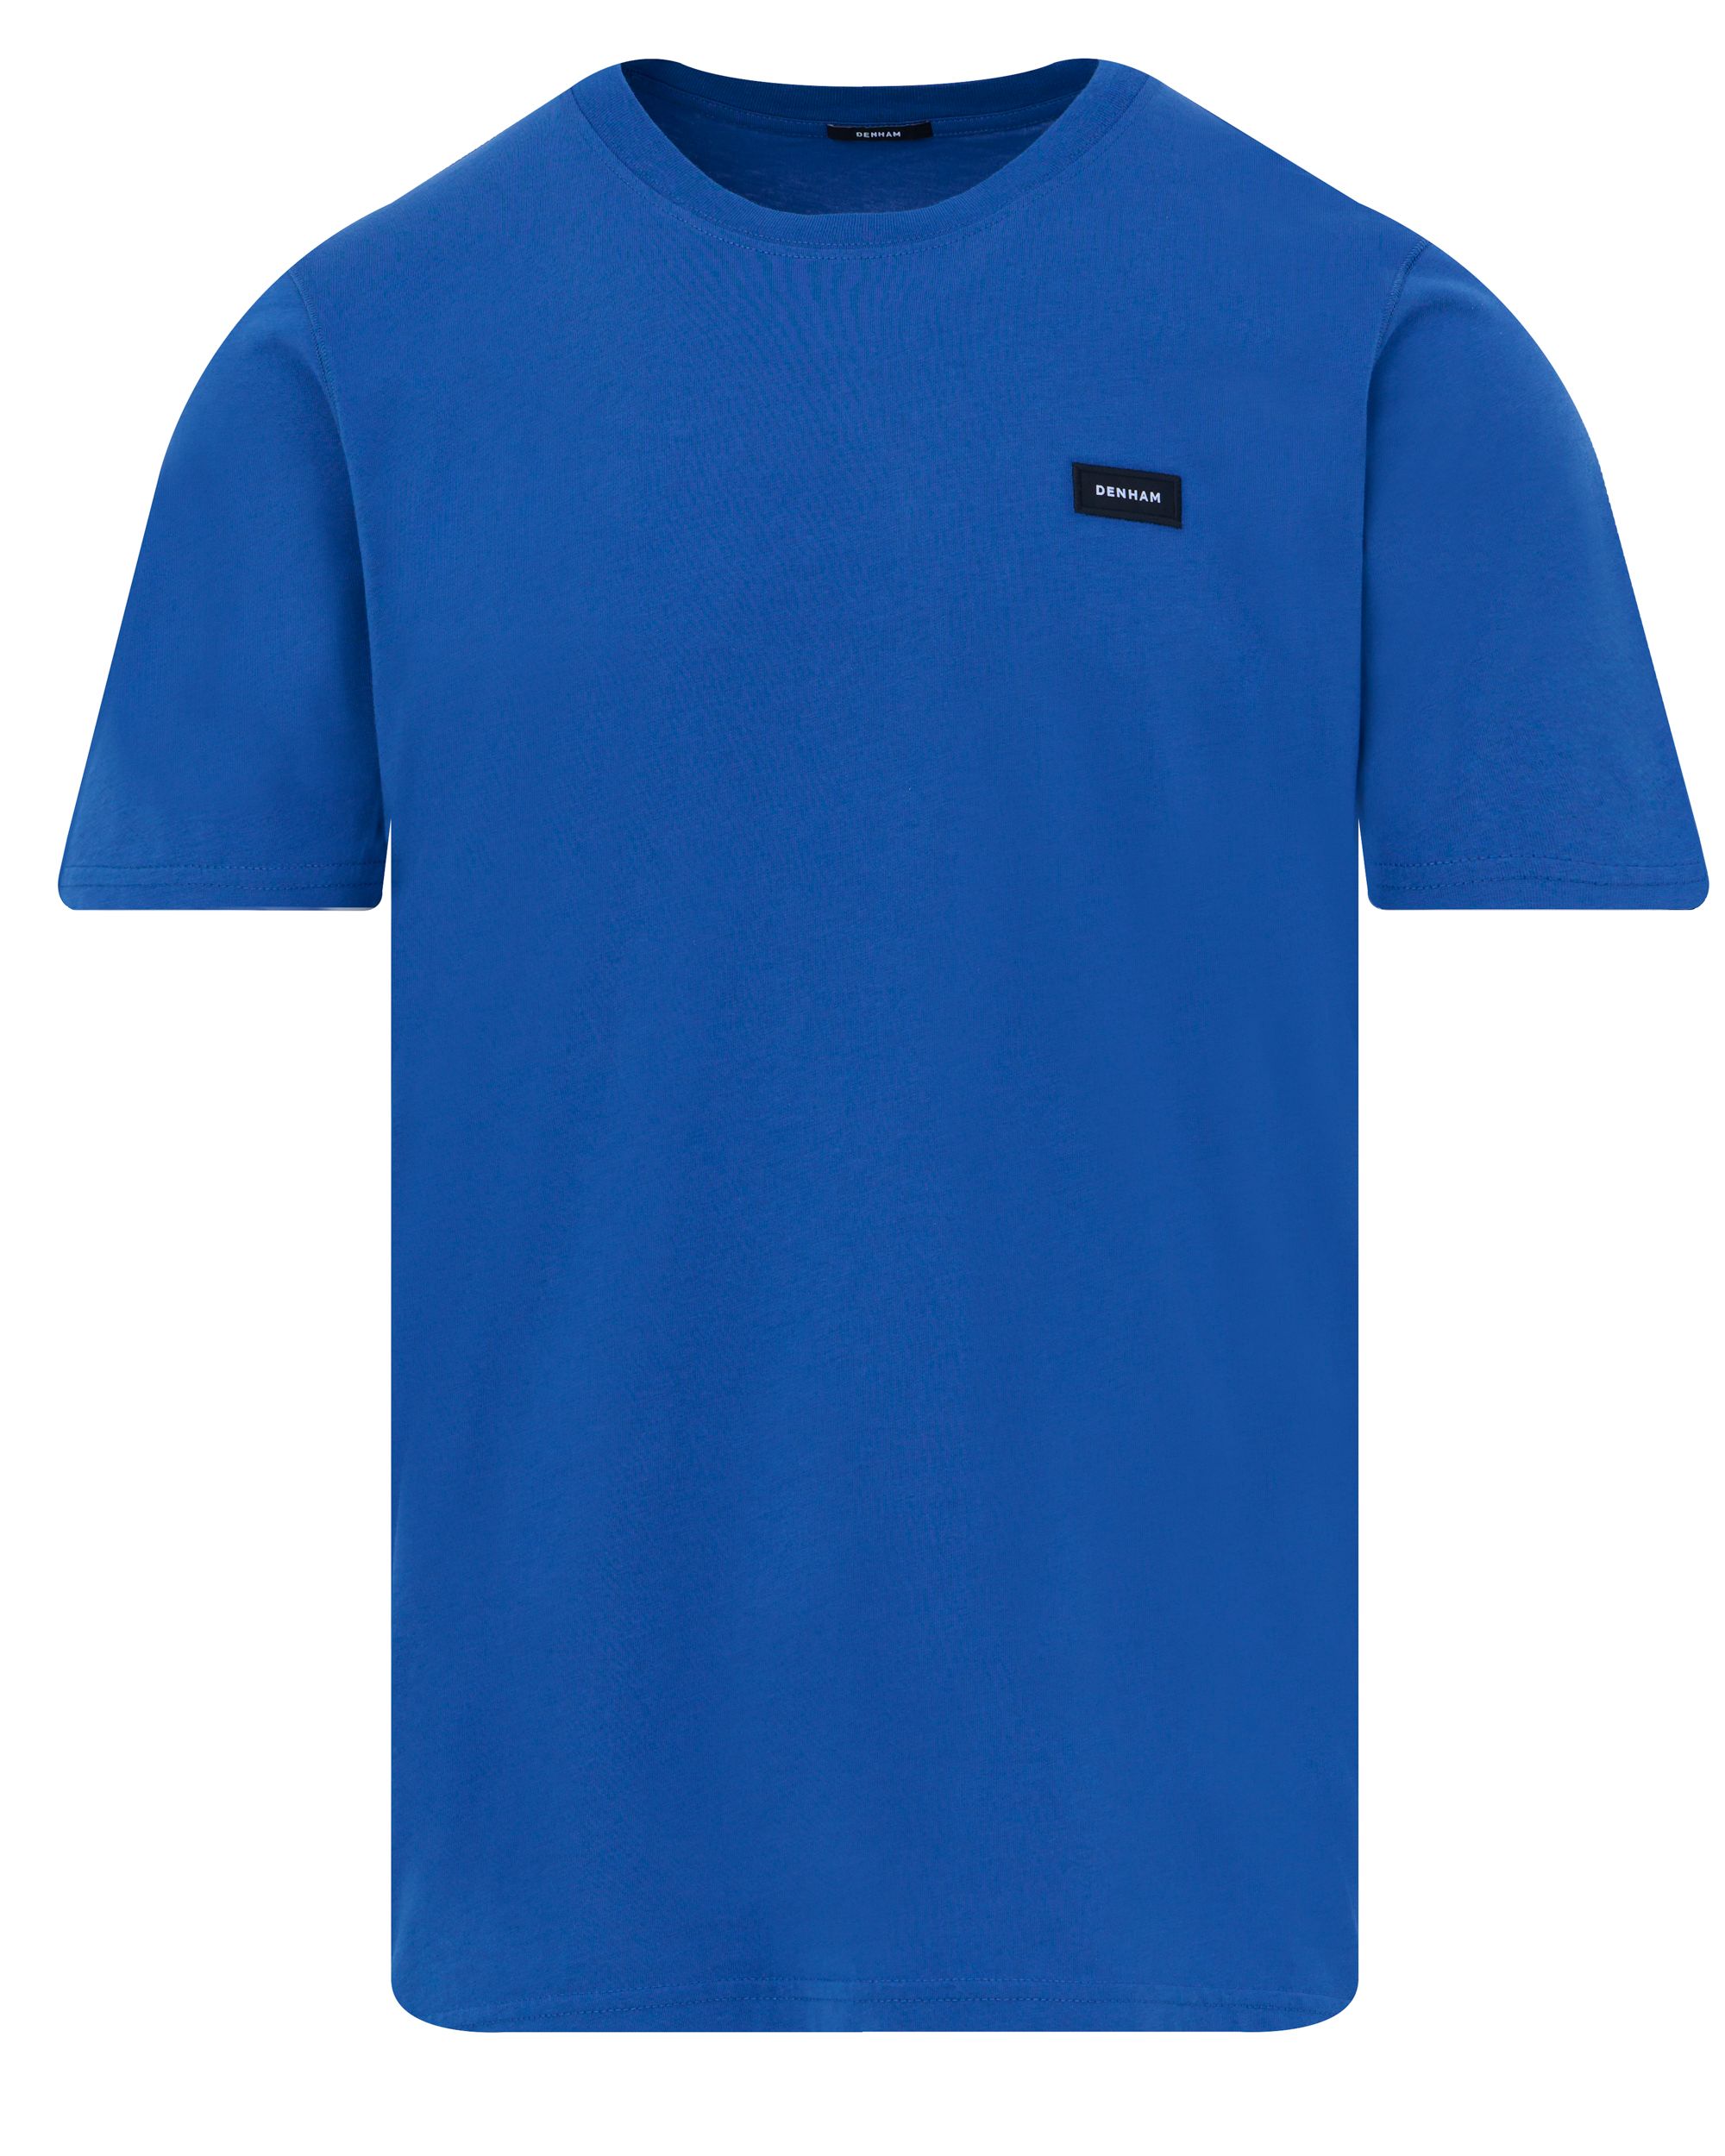 DENHAM Slim T-shirt KM Kobalt 089087-001-L